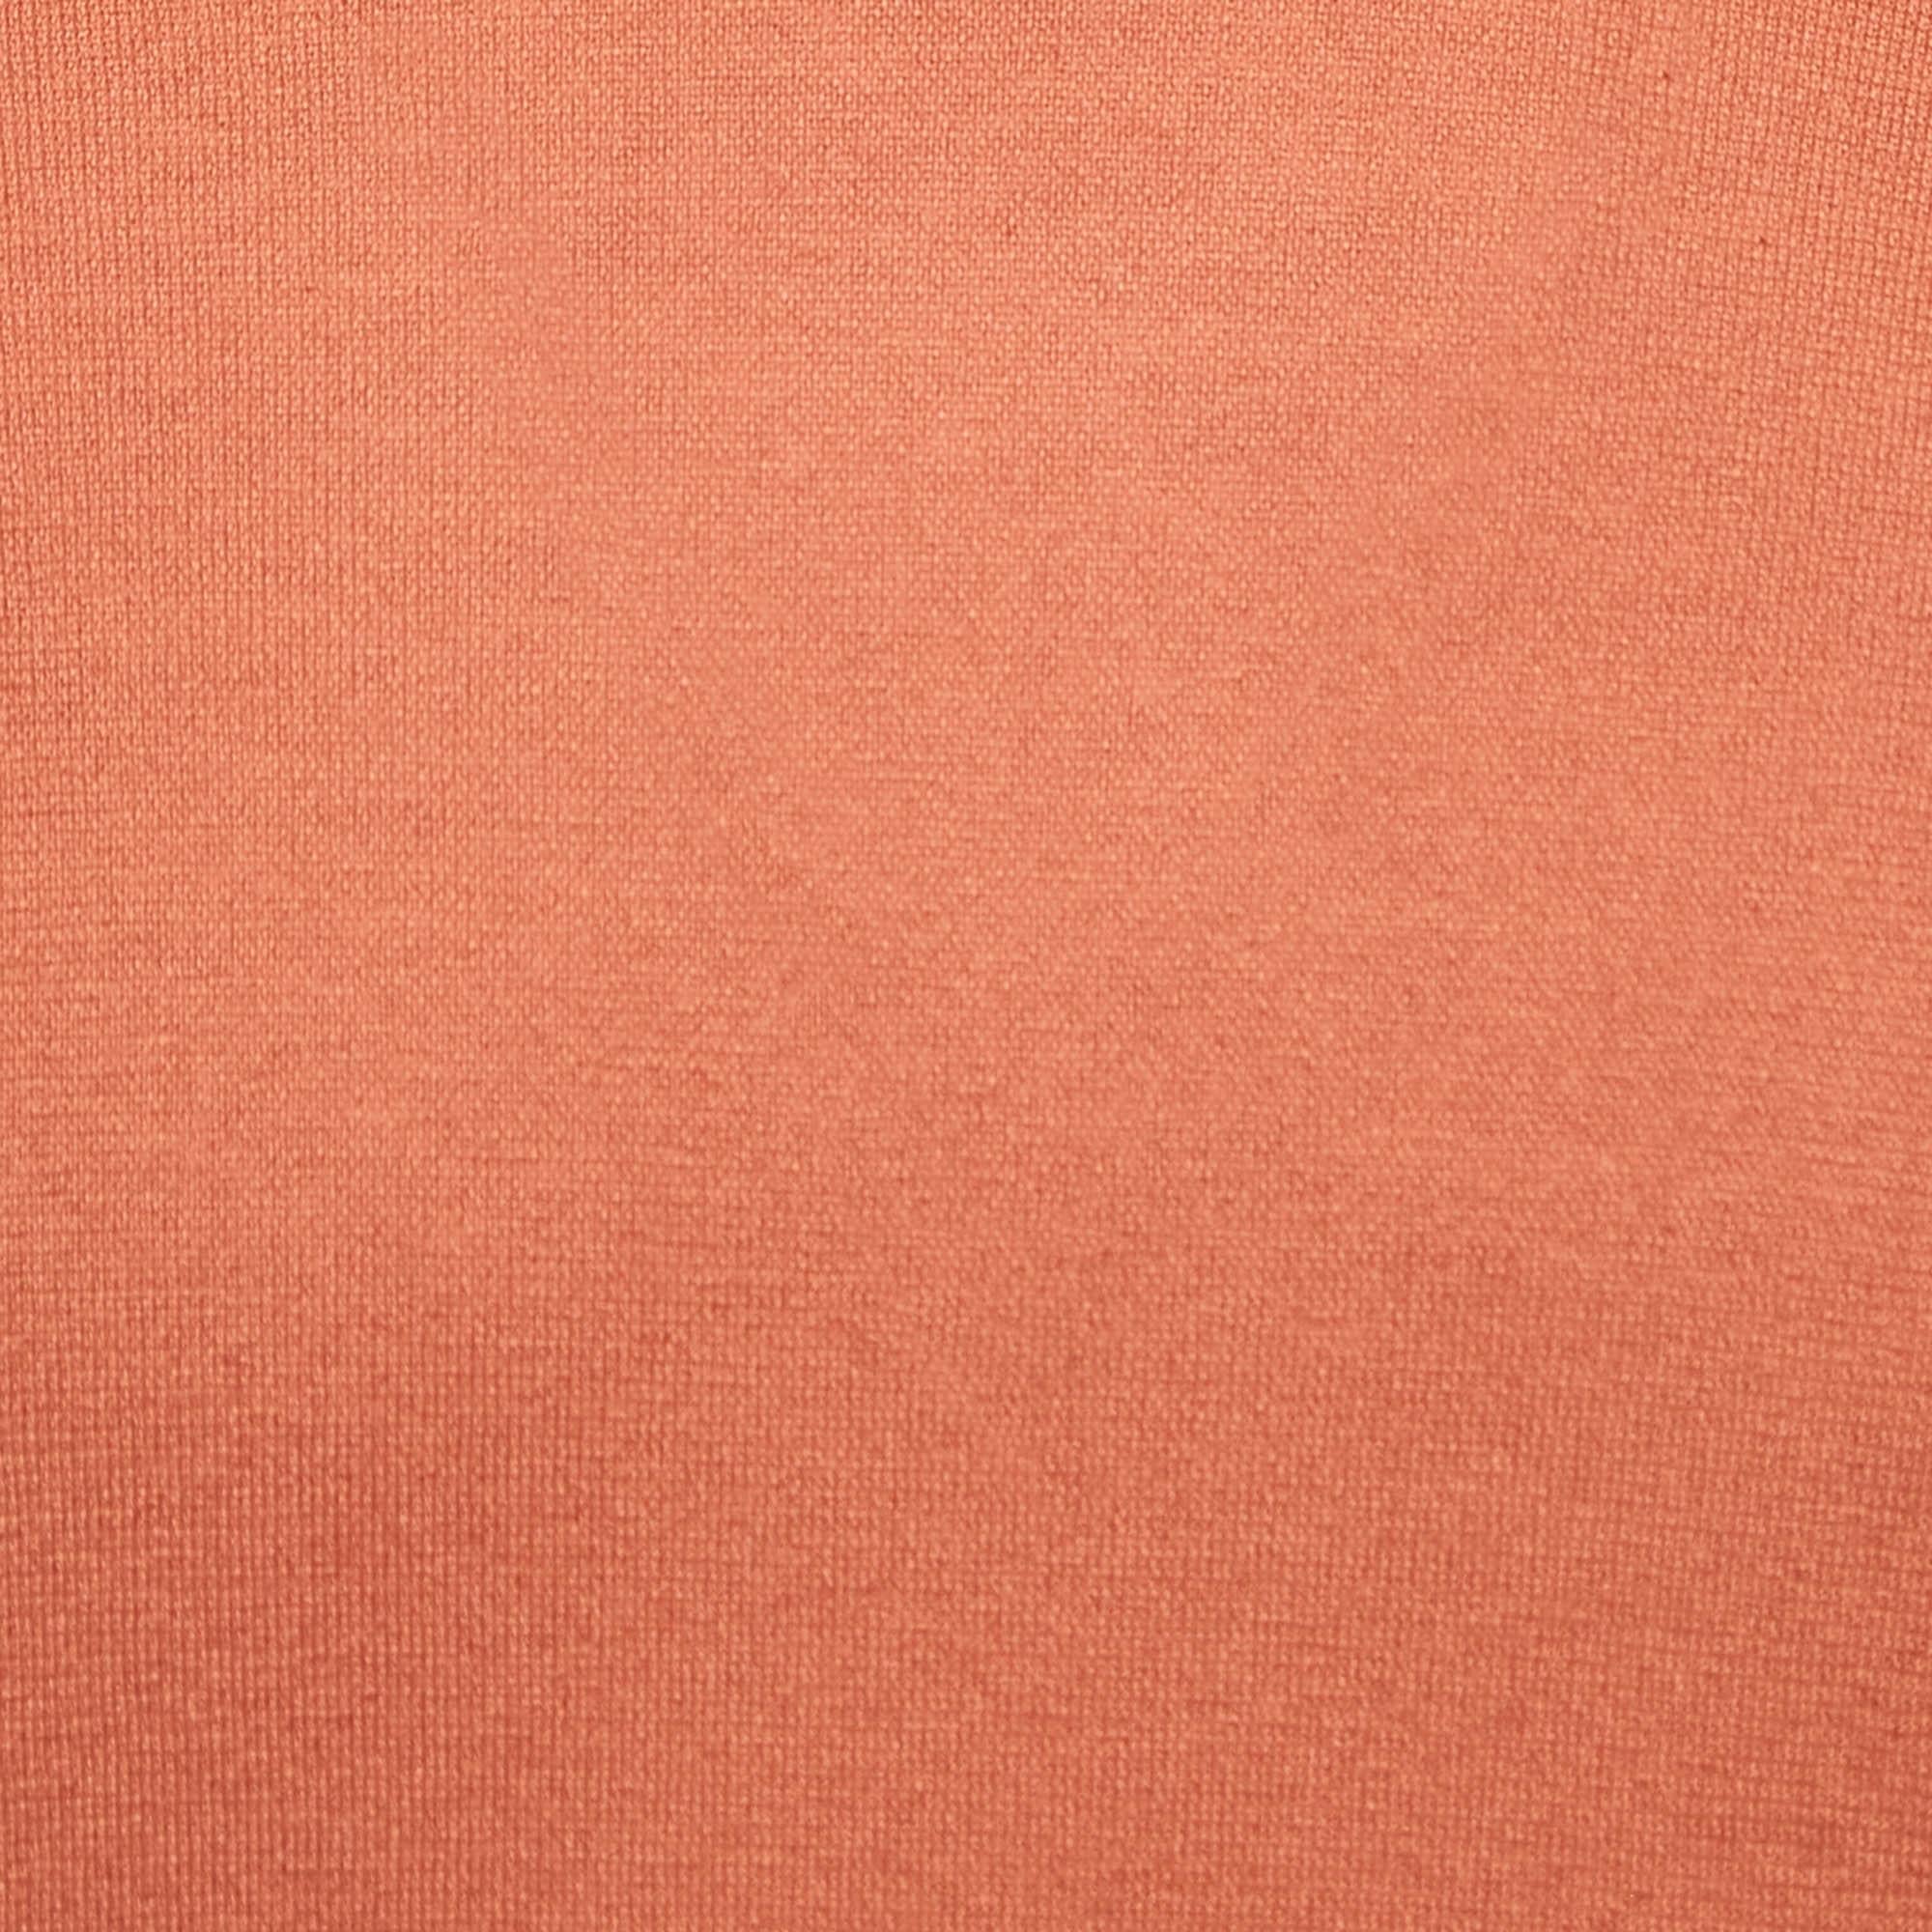 Loro Piana Orange Baby Cashmere Turtle Neck Sweater M In Good Condition For Sale In Dubai, Al Qouz 2